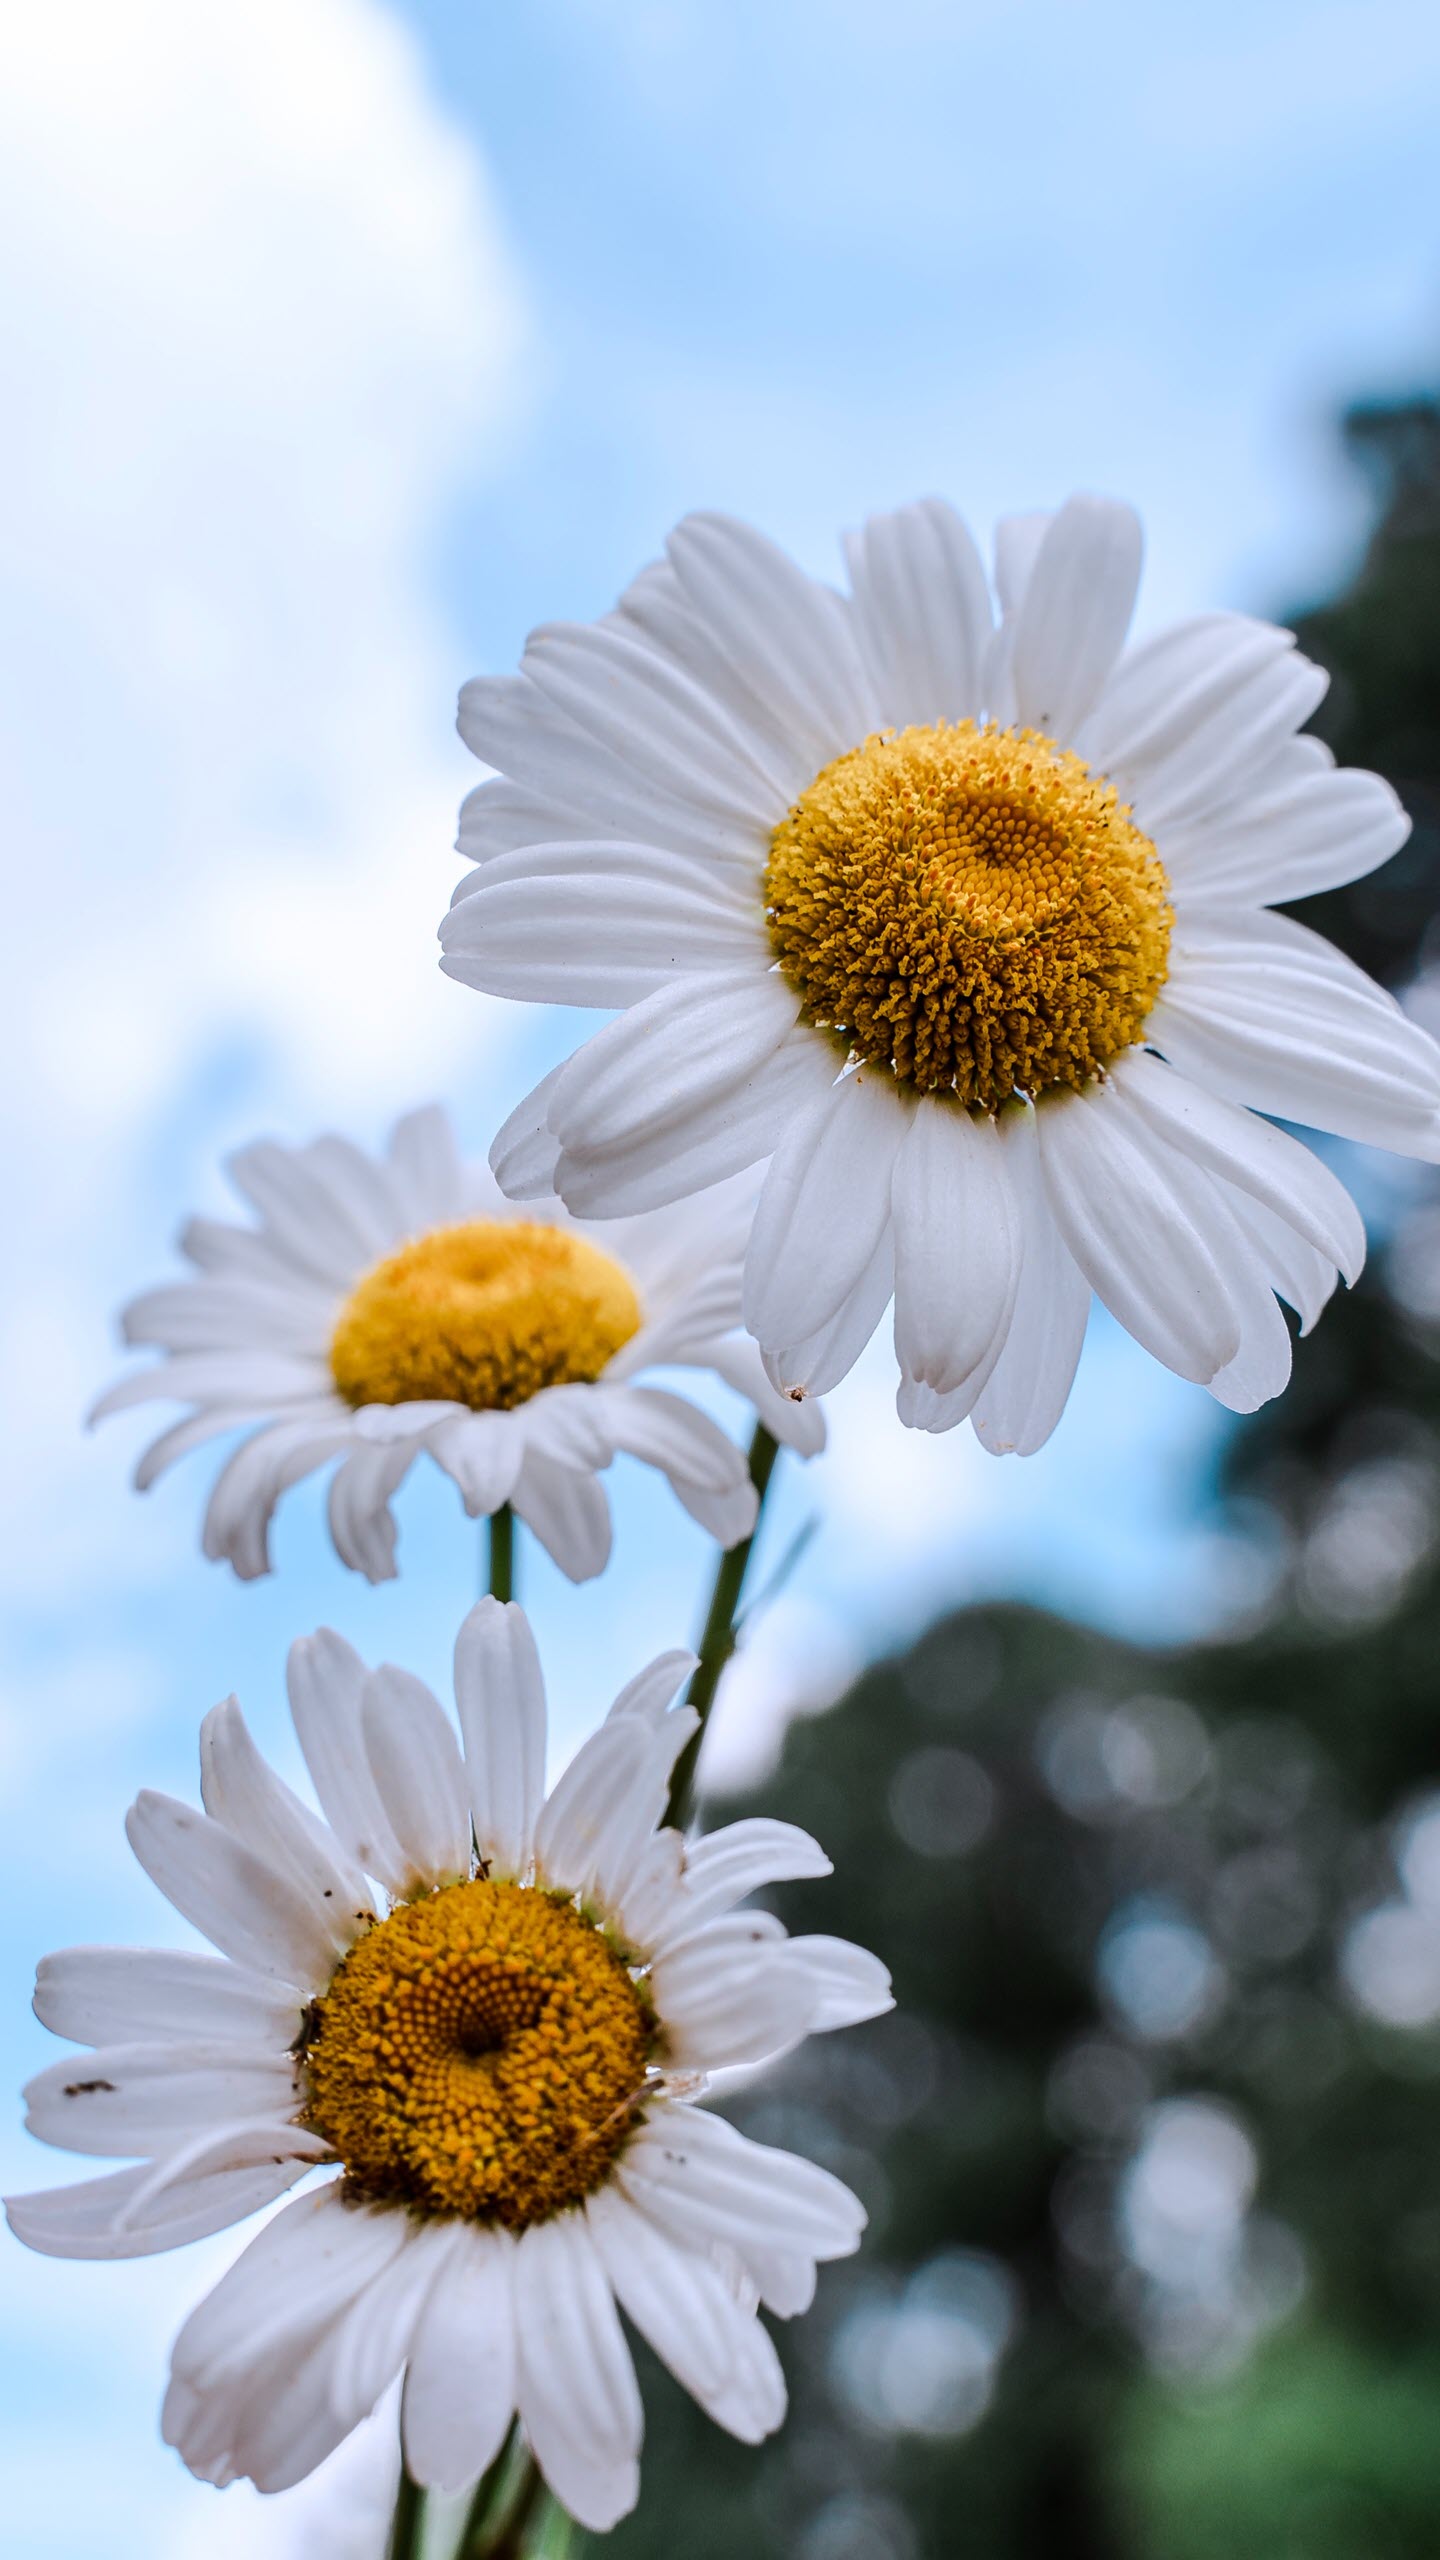 101 hình nền hoa cúc trắng đẹp, chất lượng cao, tải miễn phí